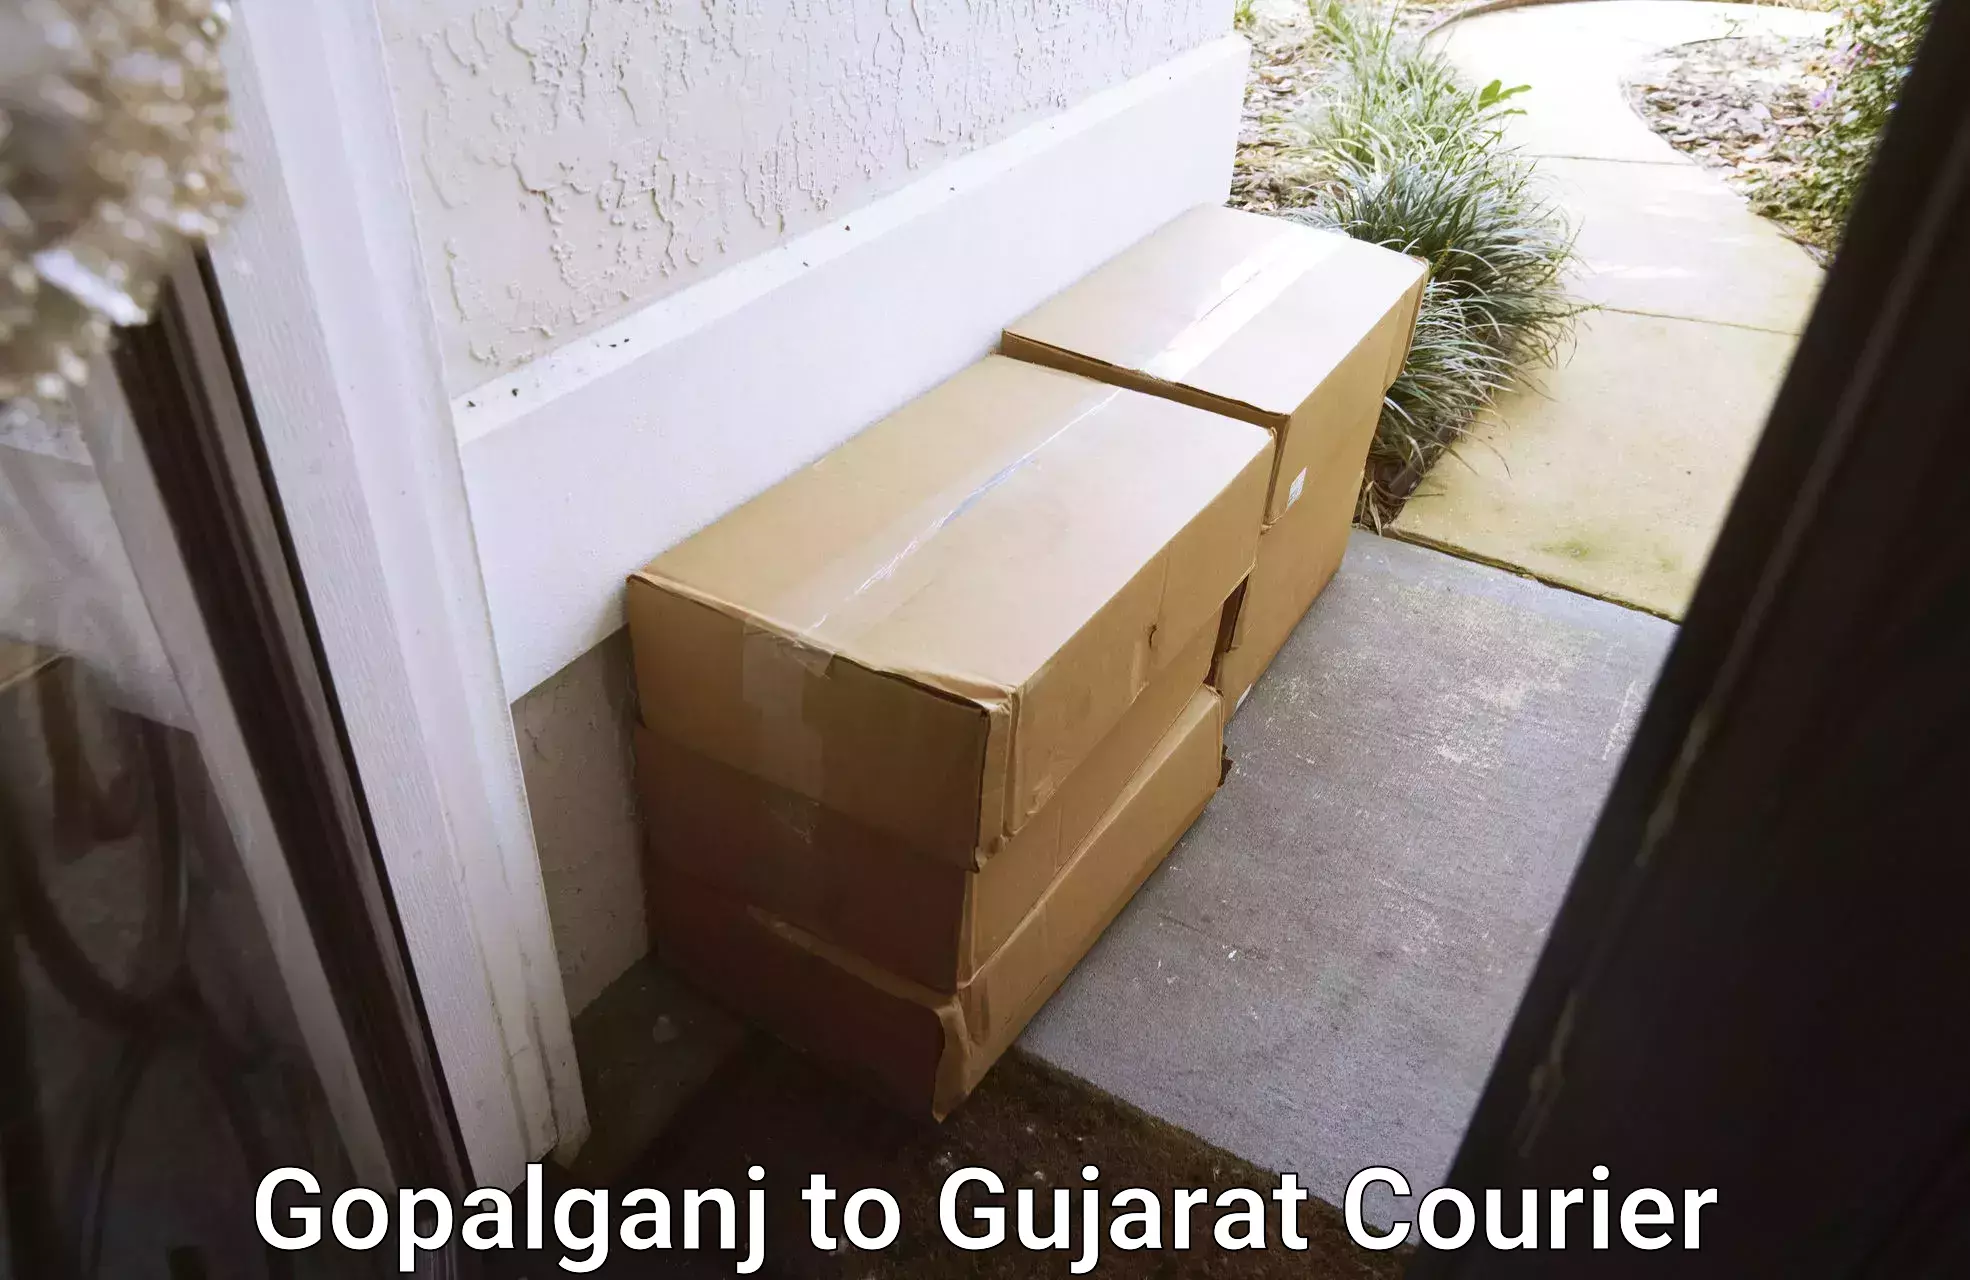 Furniture moving plans Gopalganj to Bhabhar